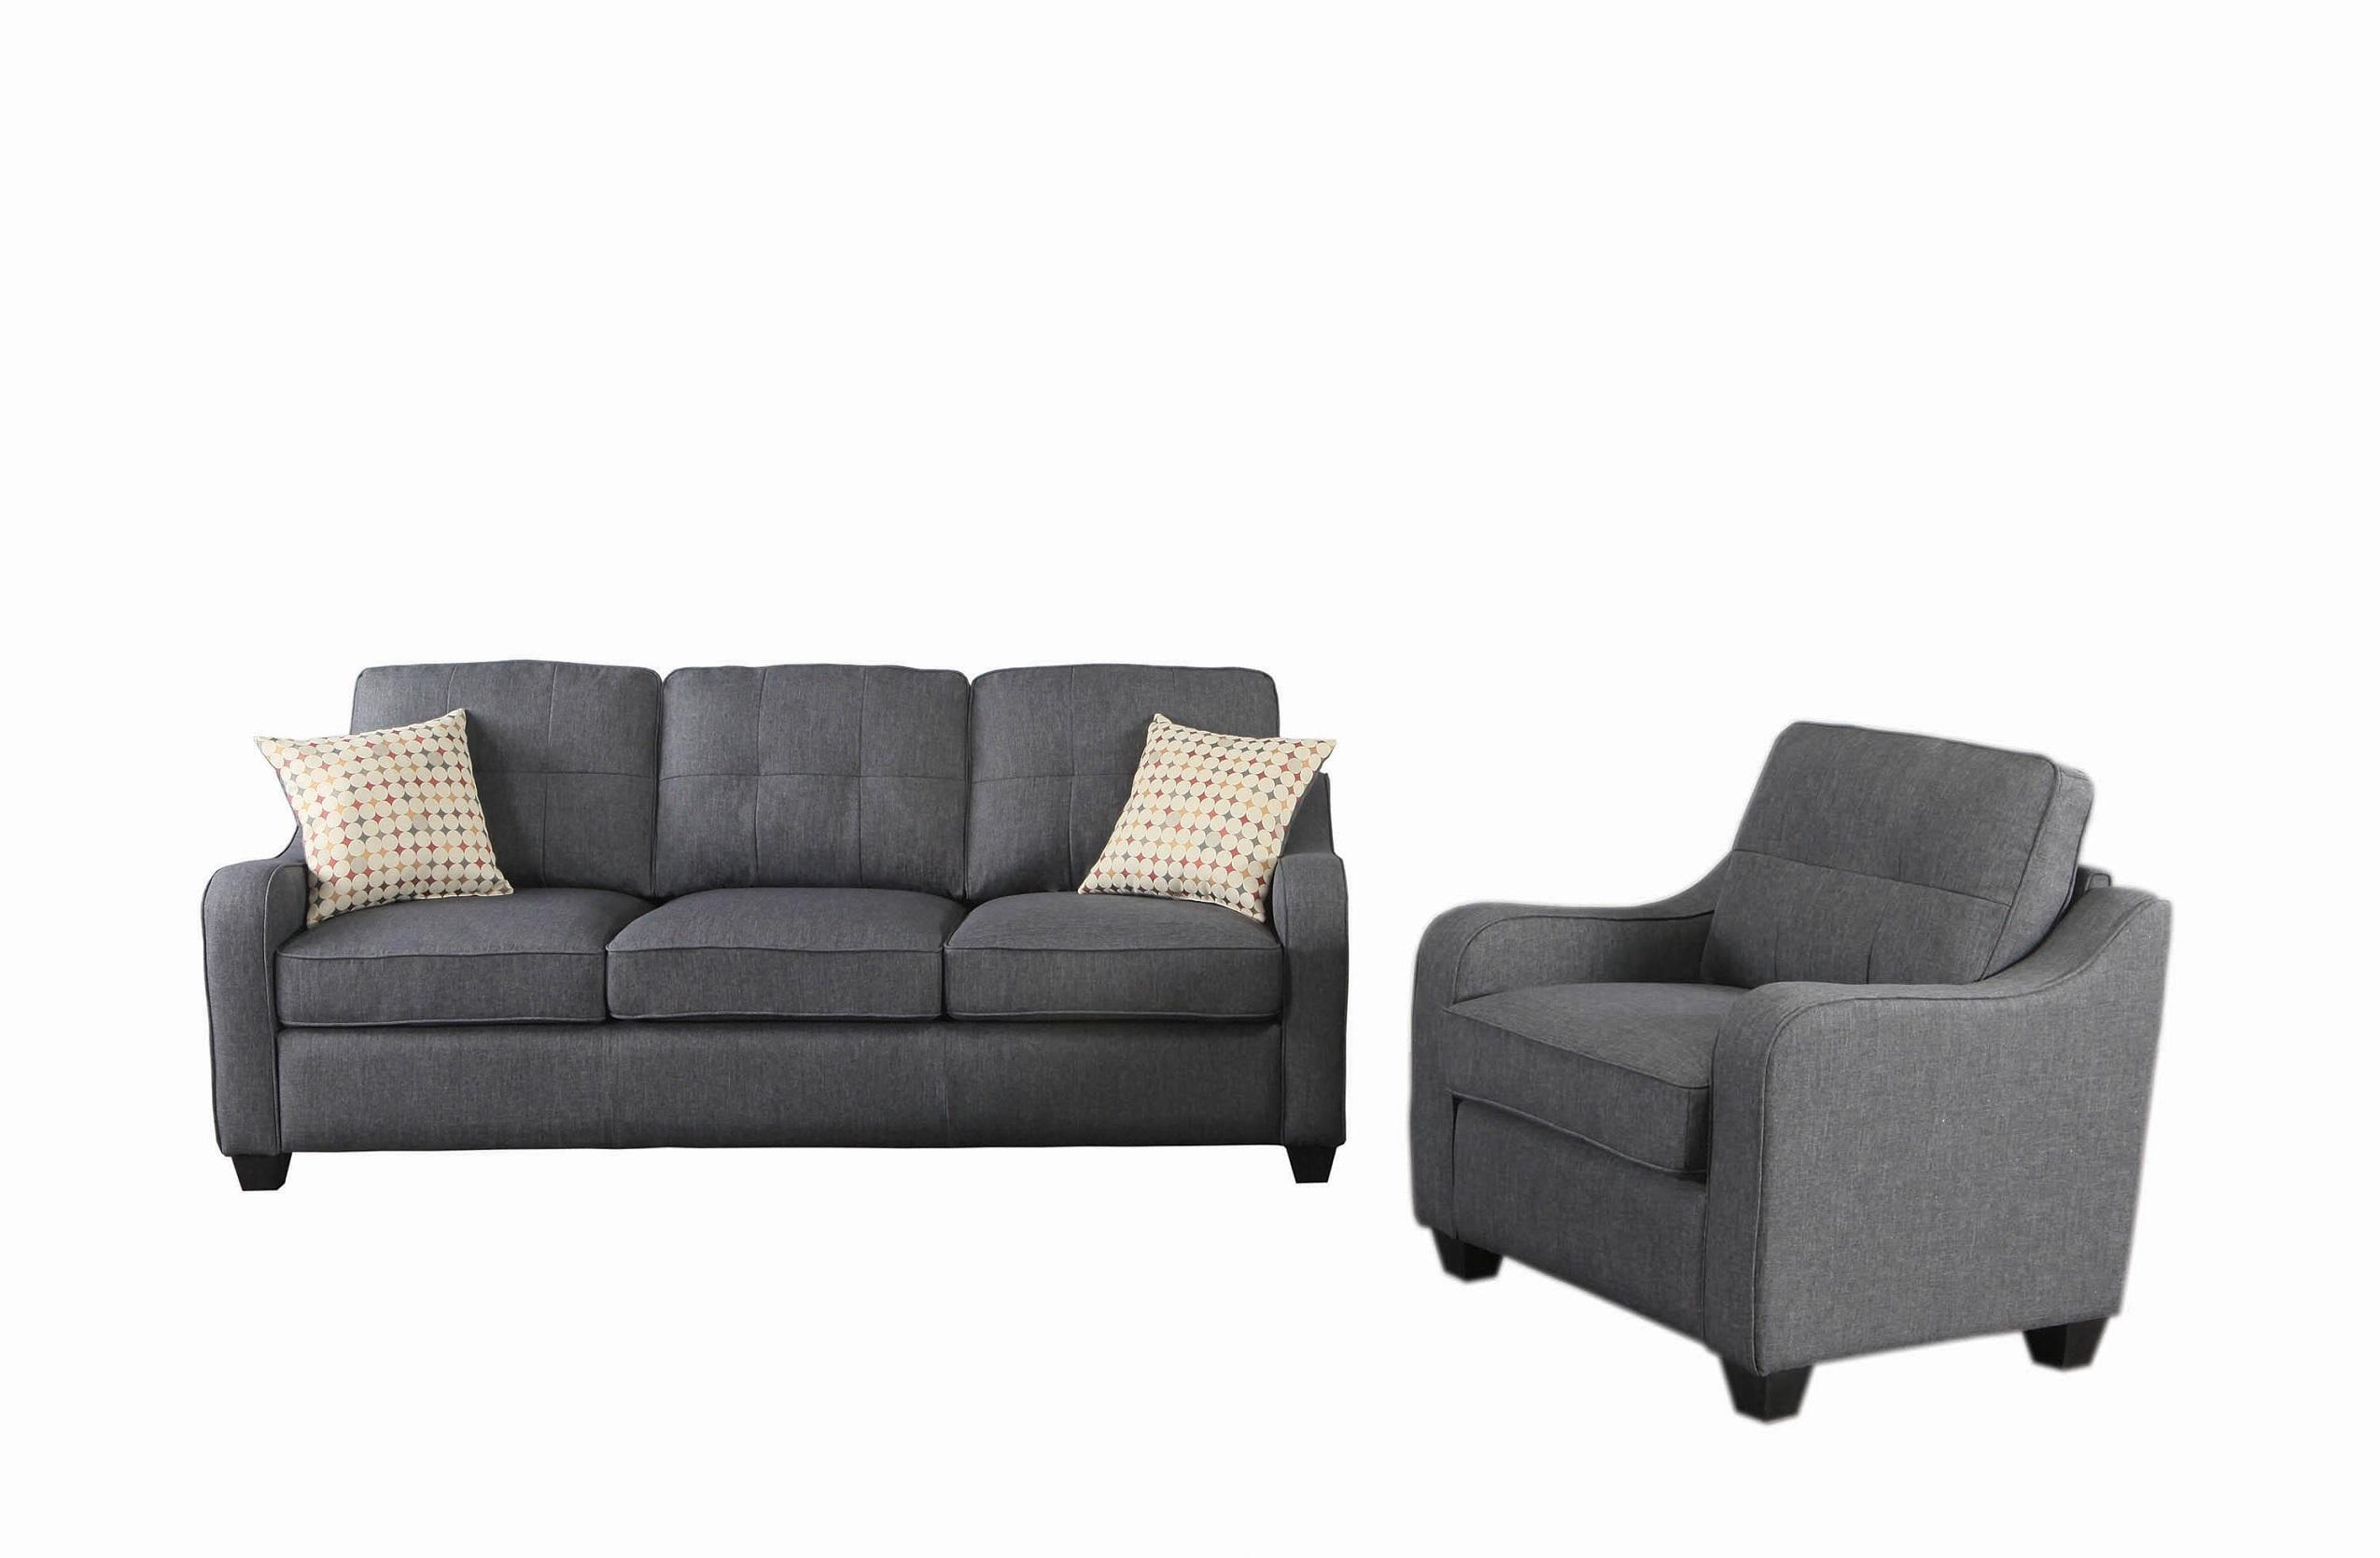 Modern Living Room Set 508321-2S Nicolette 508321-2S in Dark Gray 